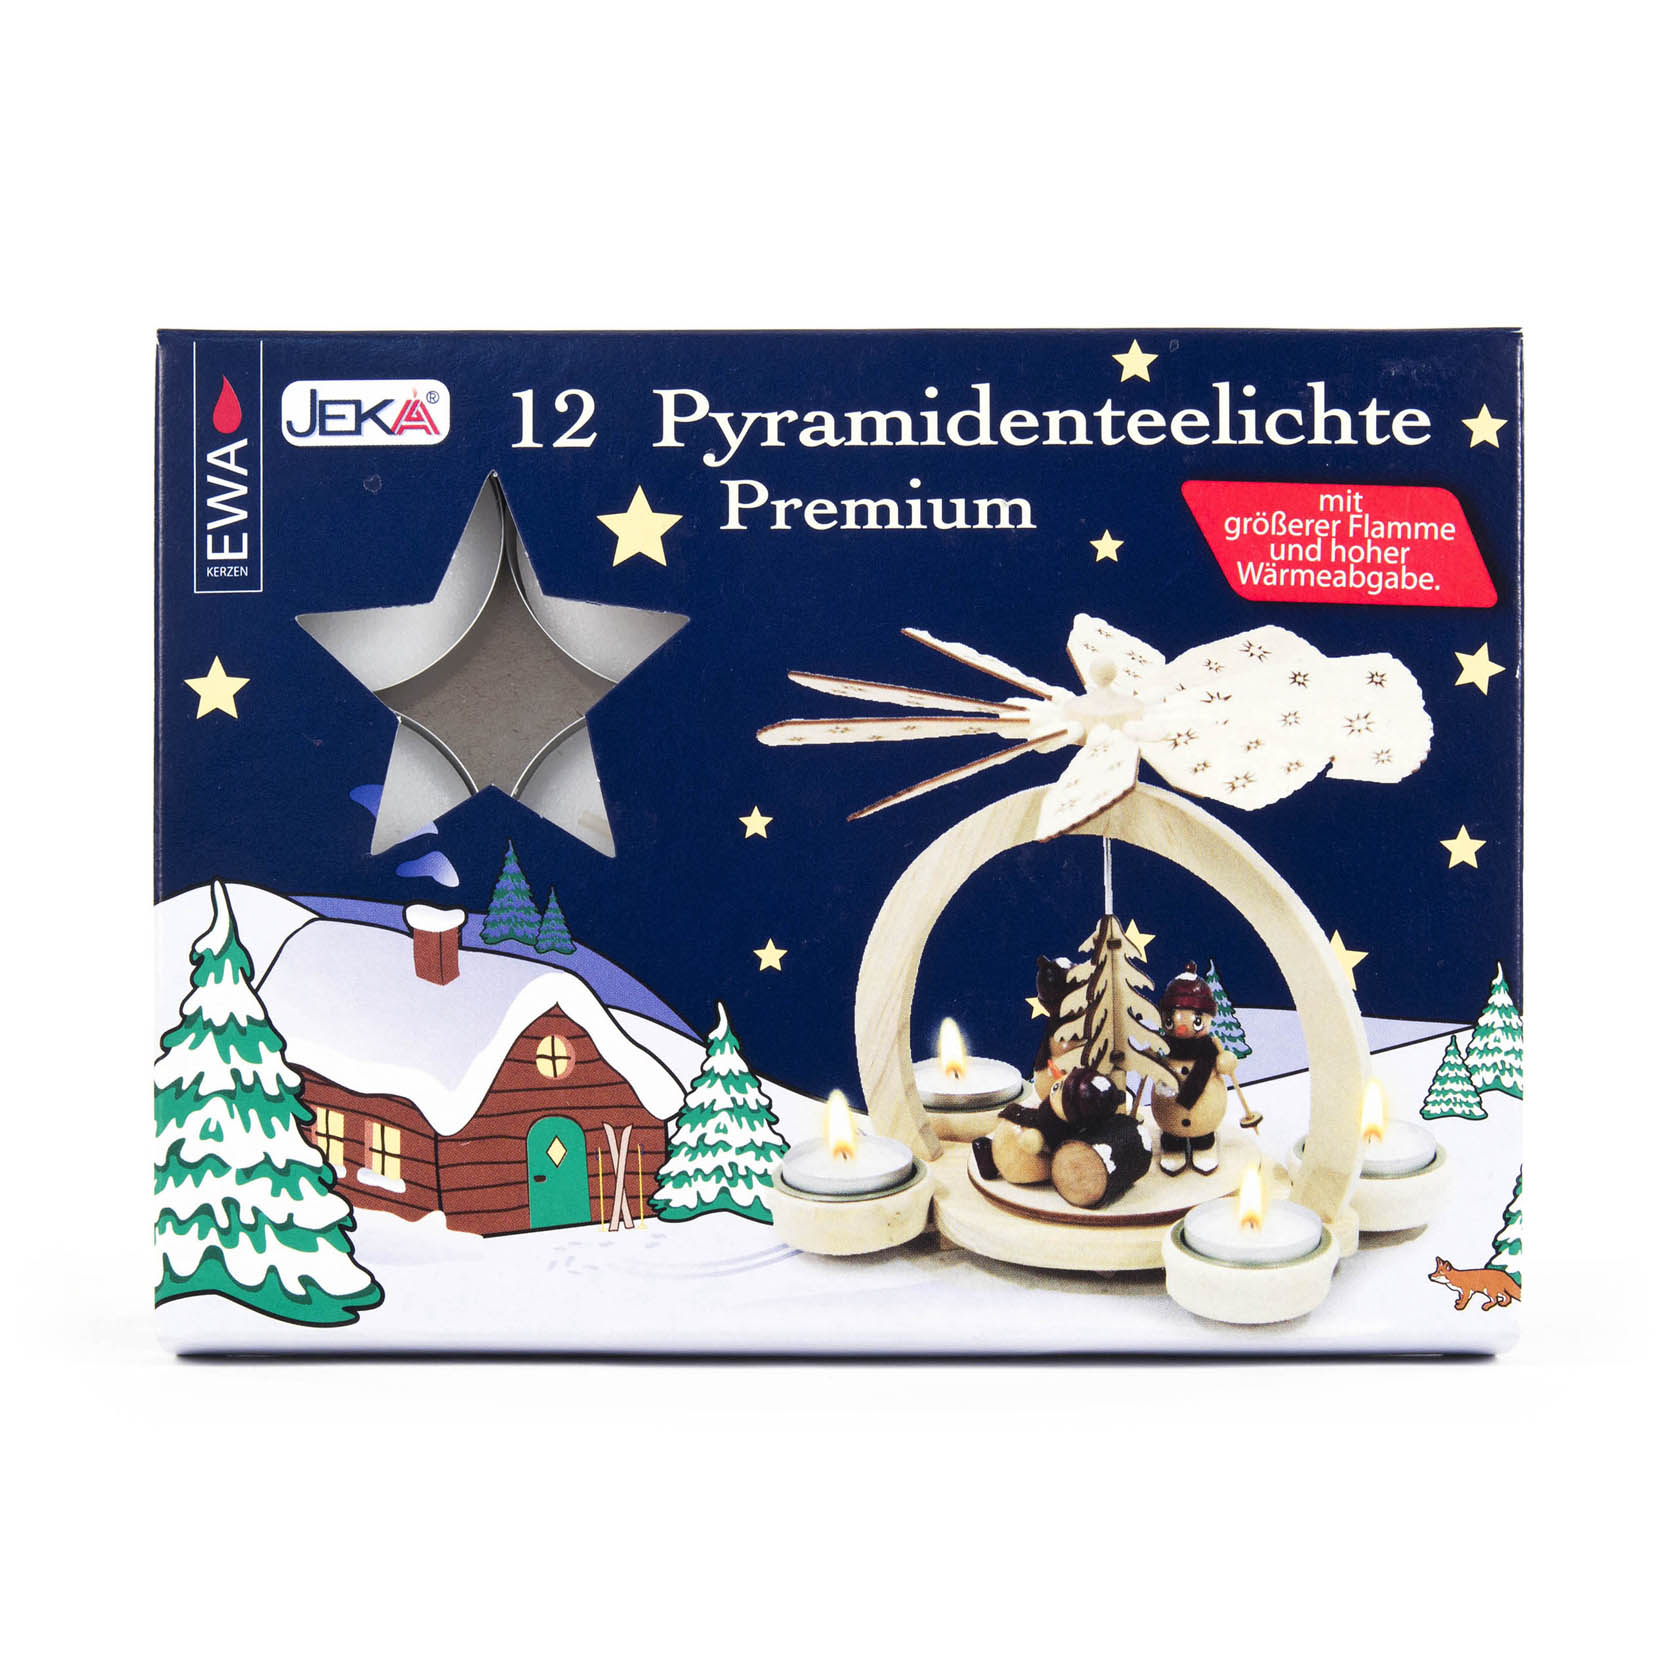 Pyramidenteelichte Premium (12) UK 24 im Dregeno Online Shop günstig kaufen